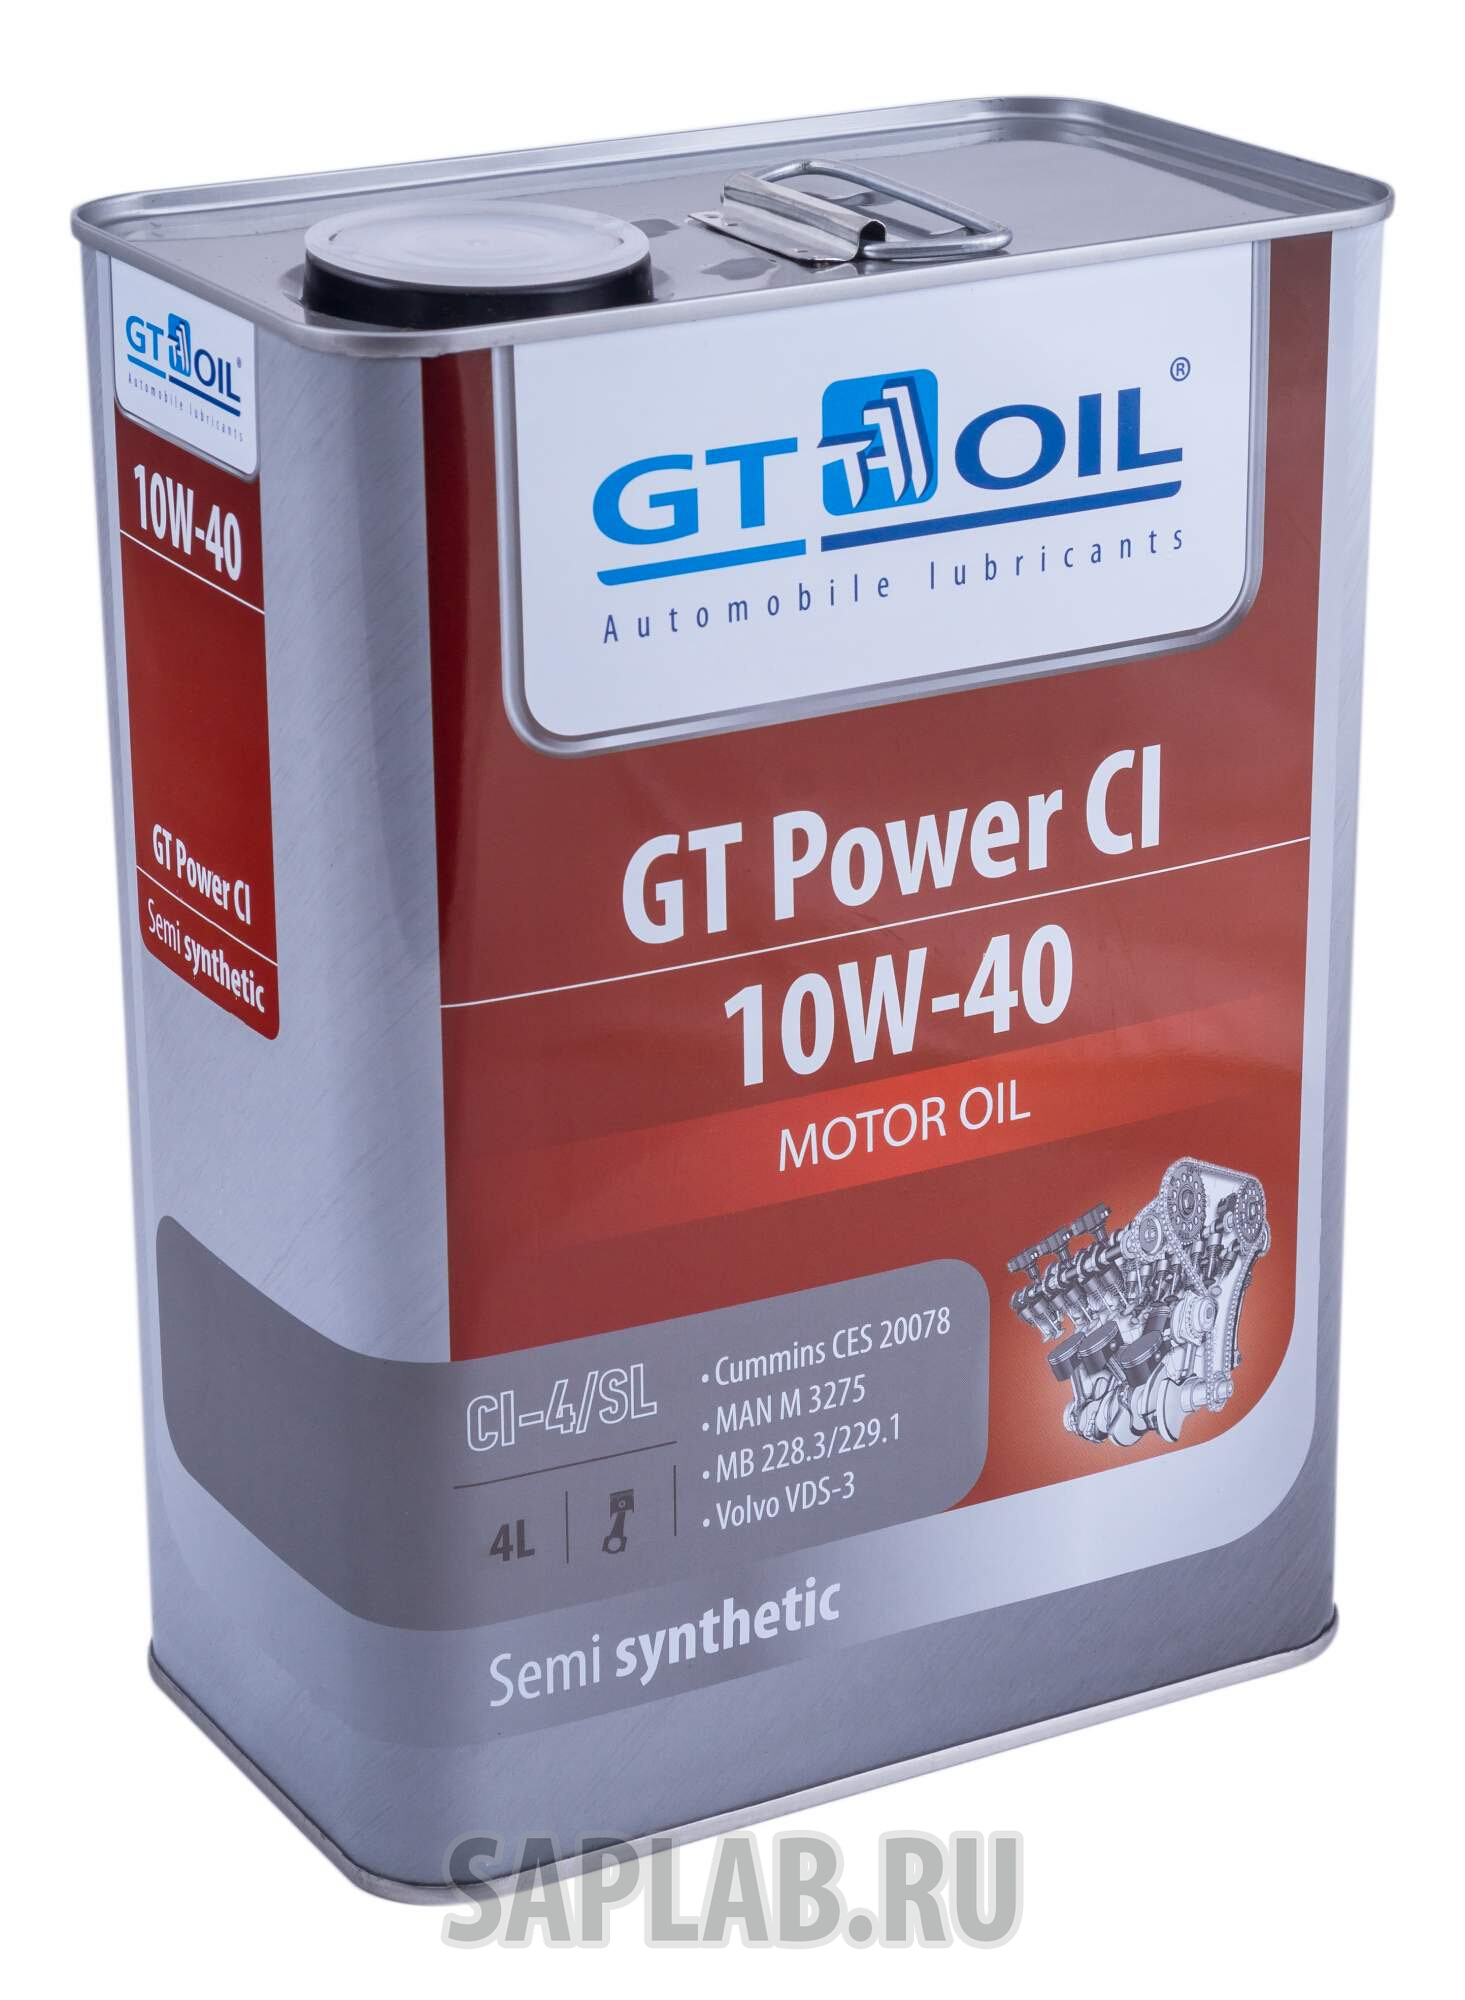 Купить запчасть GT OIL - 8809059407523 GT Power CI, 4 л